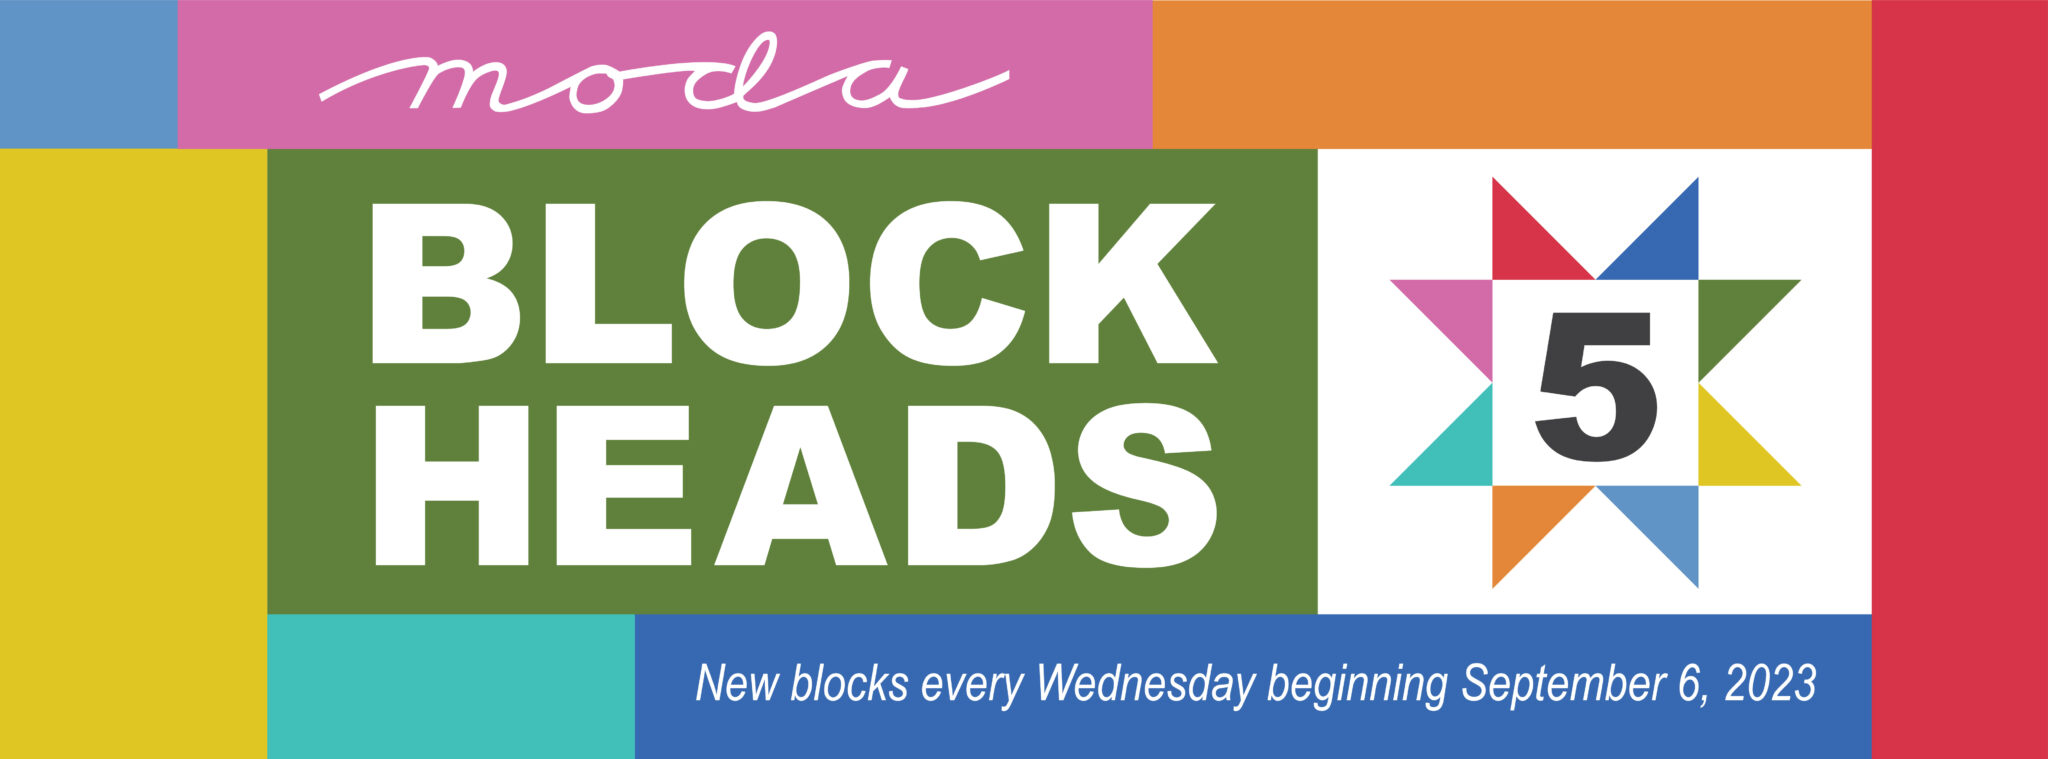 Moda BlockHeads 5 Lella Boutique